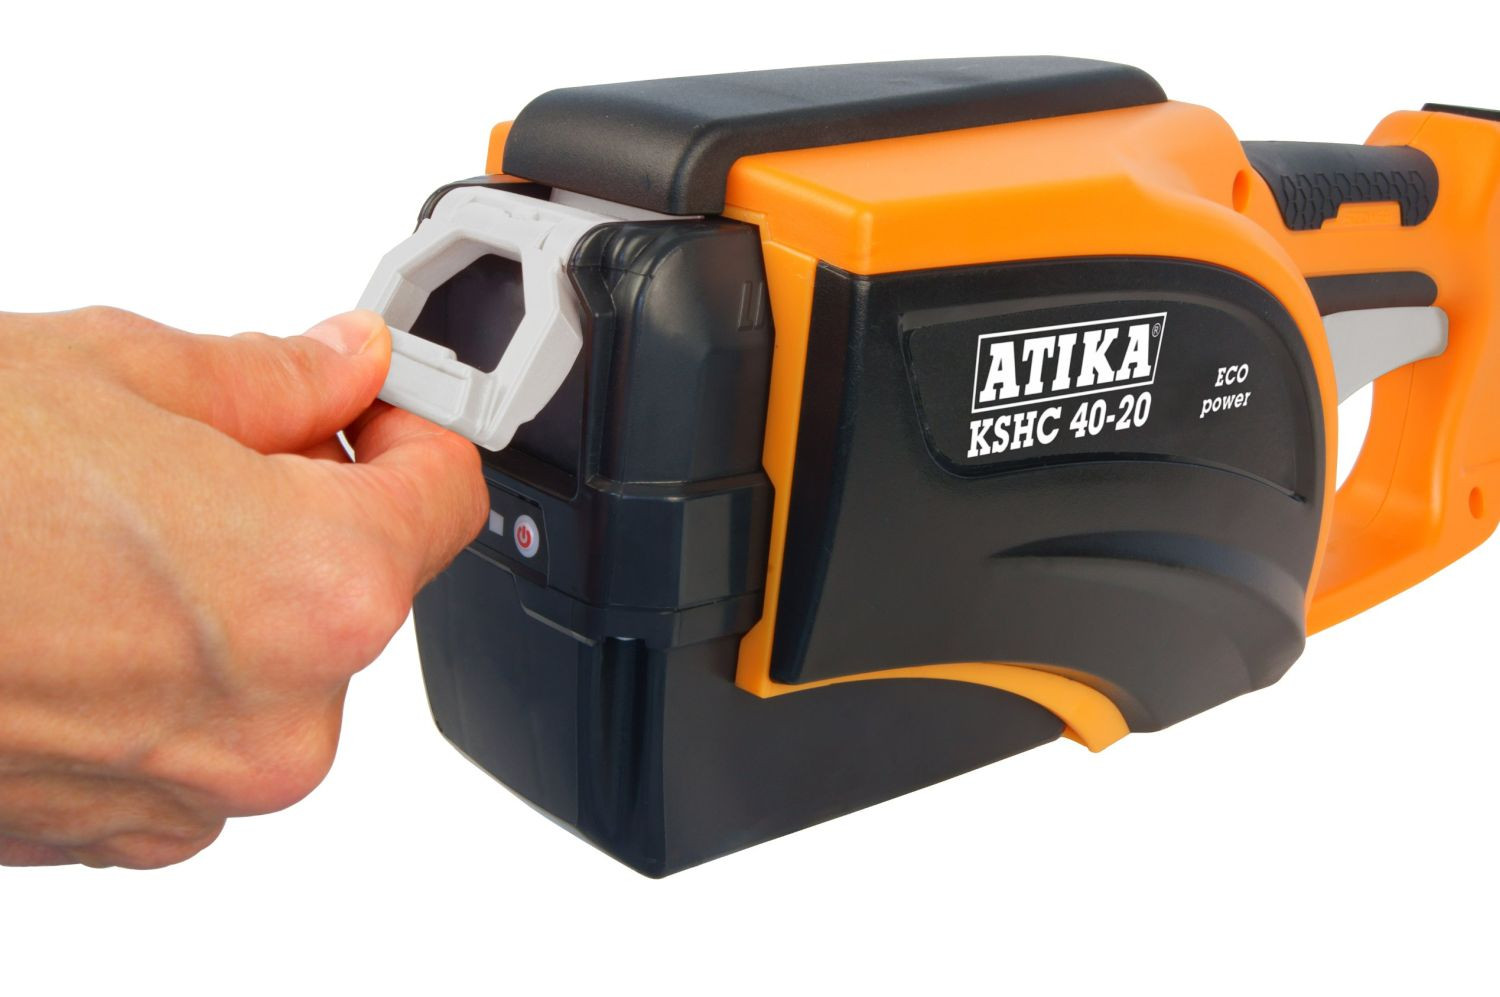 ATIKA Akku Hochentaster KSHC 40-20 ideal für die Baumpflege an schwer zu erreichenden Ästen